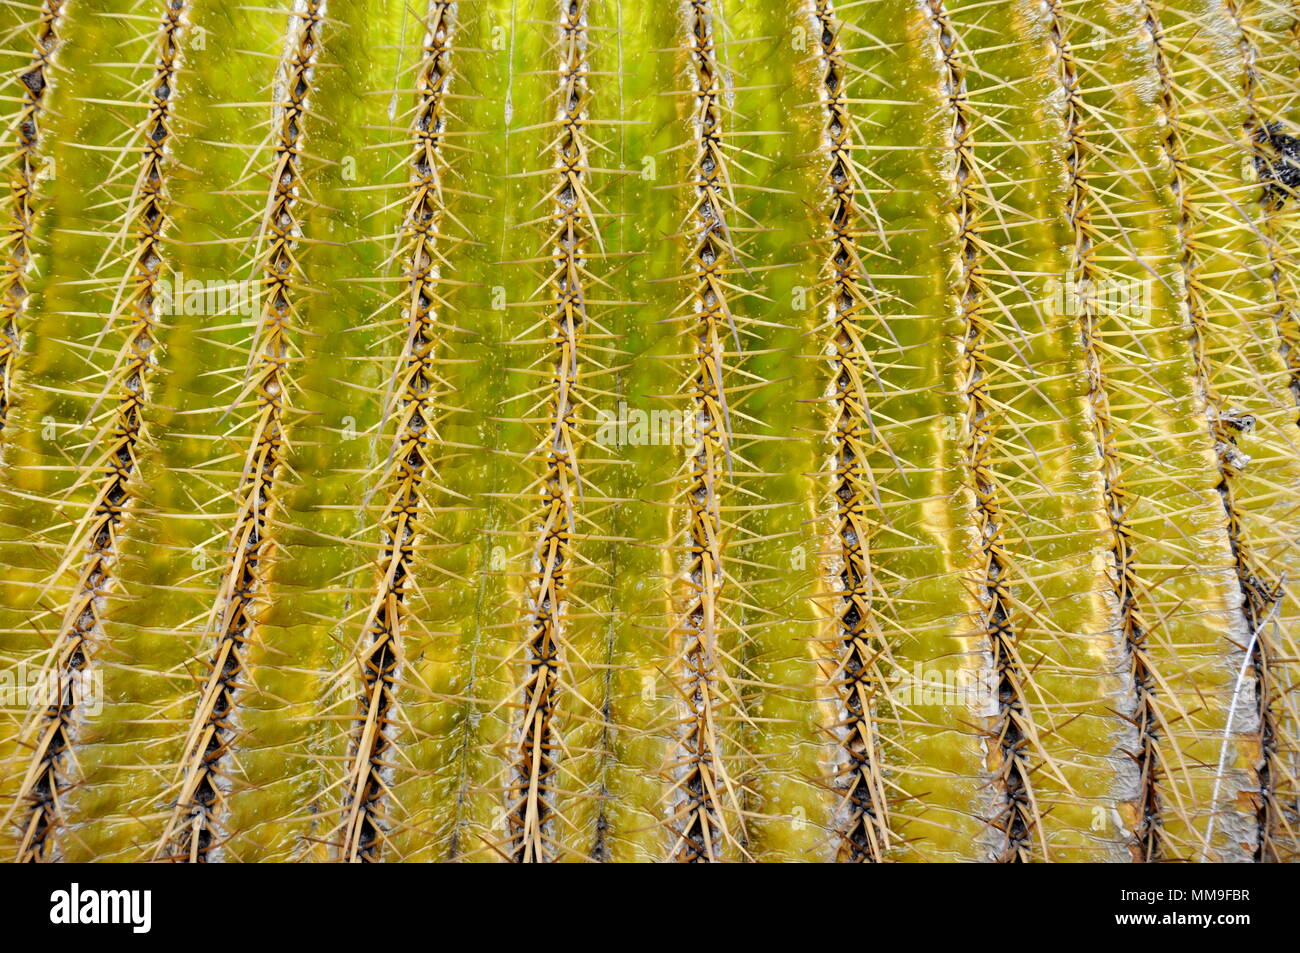 Nahaufnahme auf die Zeilen der Dornen auf einem grünen Kaktus Anlage Stockfoto